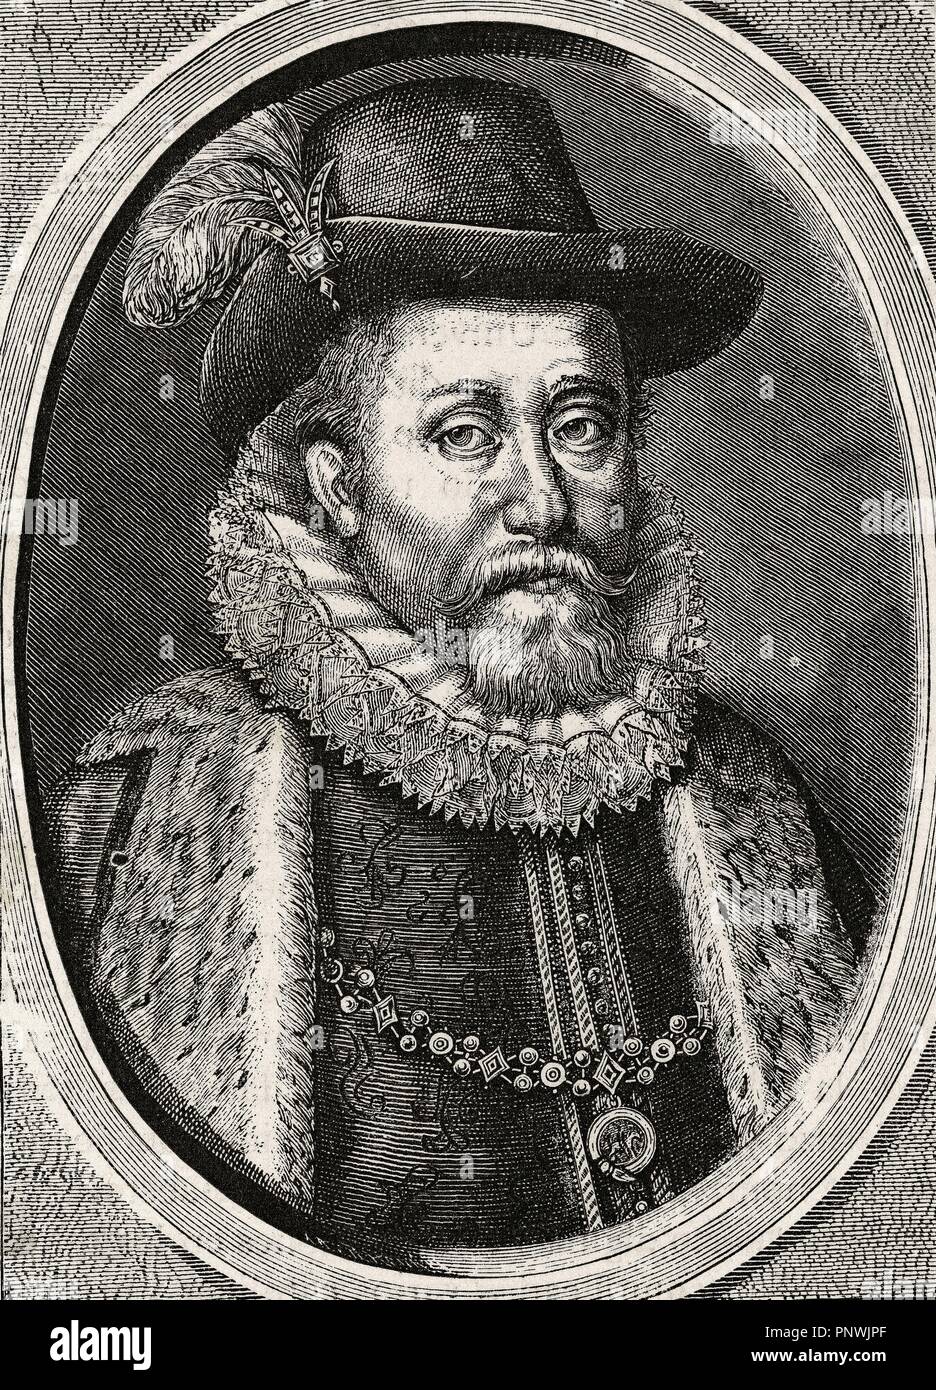 James VI und I (1566-1625). König von Scots als James VI vom 24. Juli 1567 und der König von England und Irland als James I ab 24. März 1603 bis zu seinem Tod. Gravur. Stockfoto